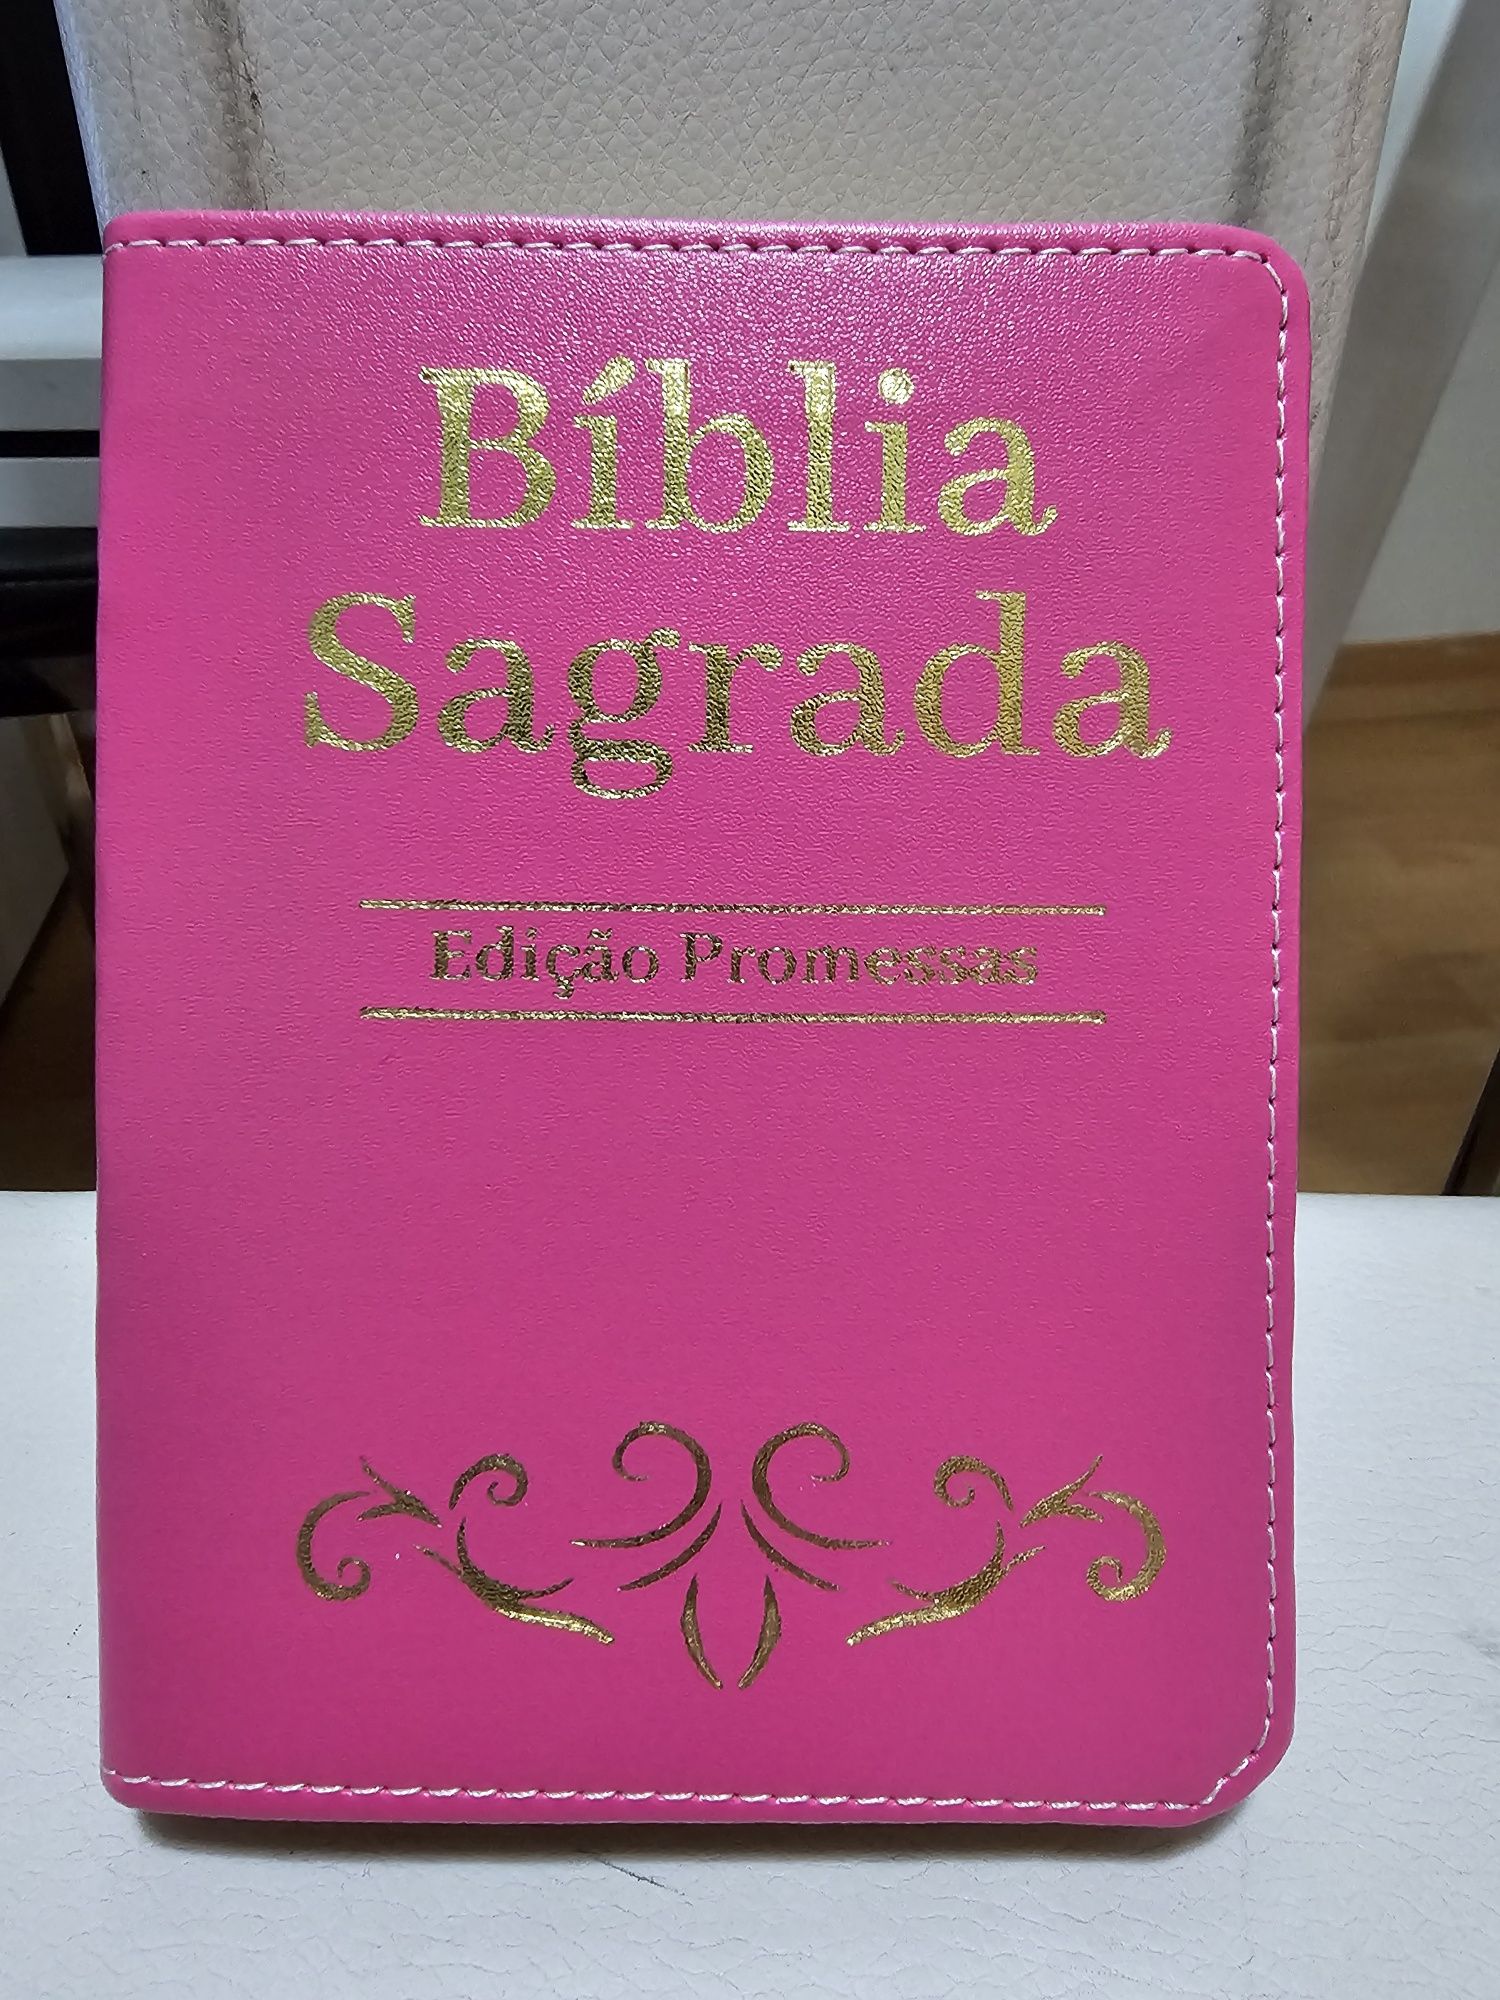 Bíblia Sagrada edição Promessas